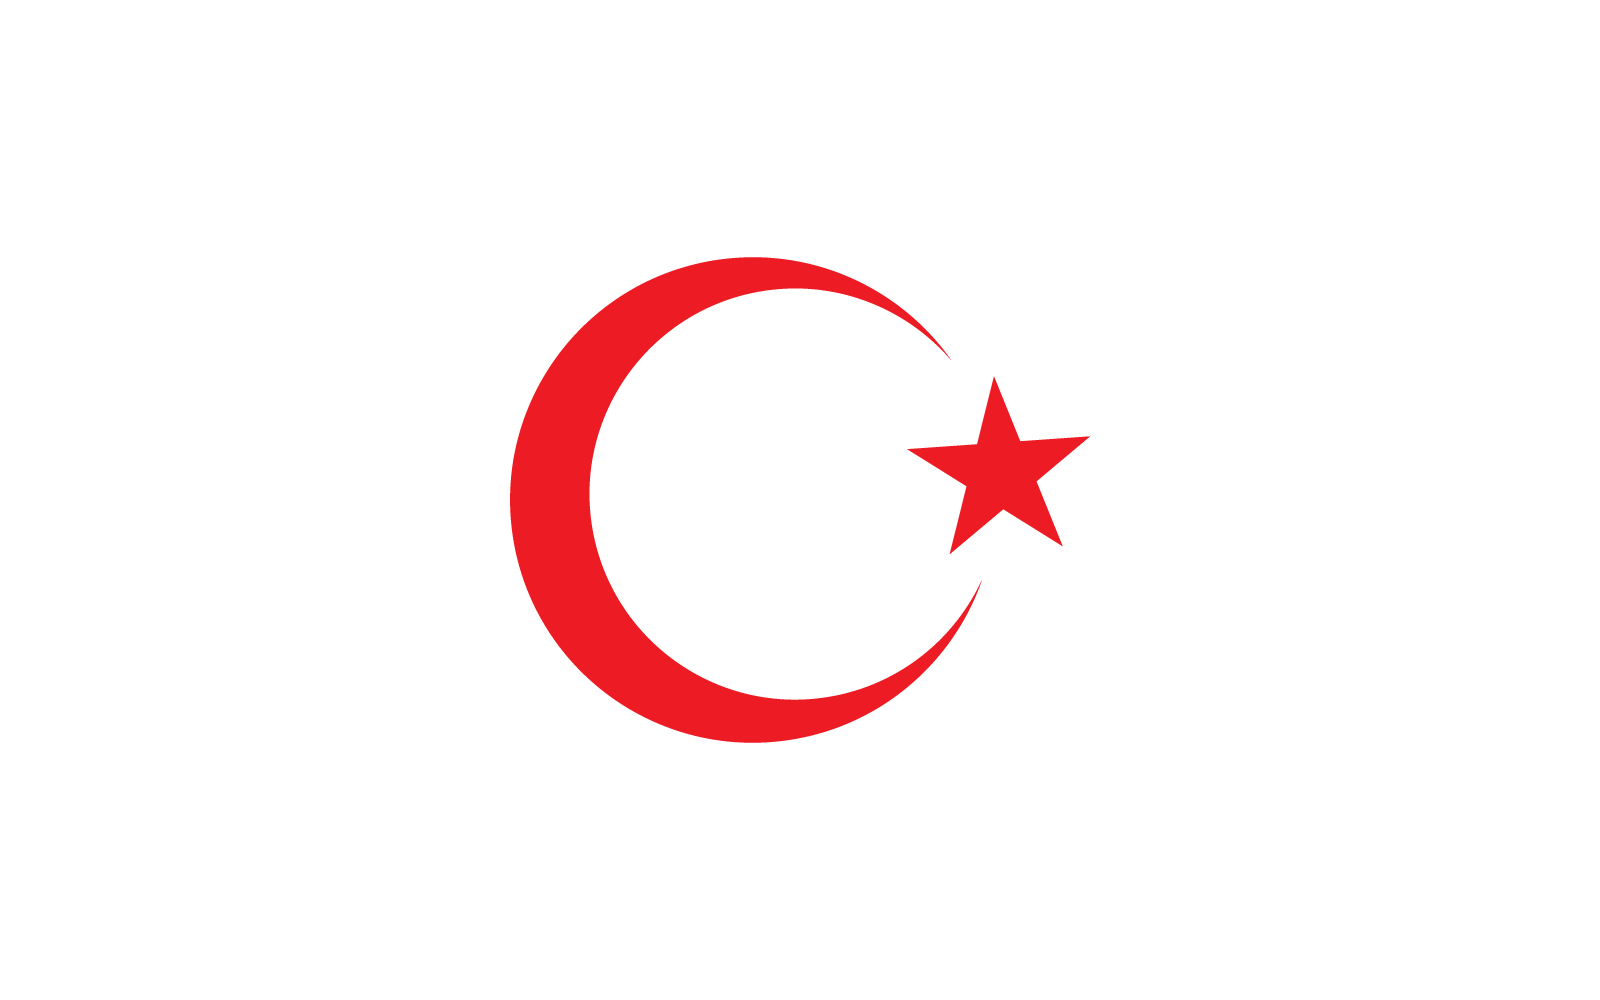 Diseño plano del vector del símbolo de la bandera de Turquía